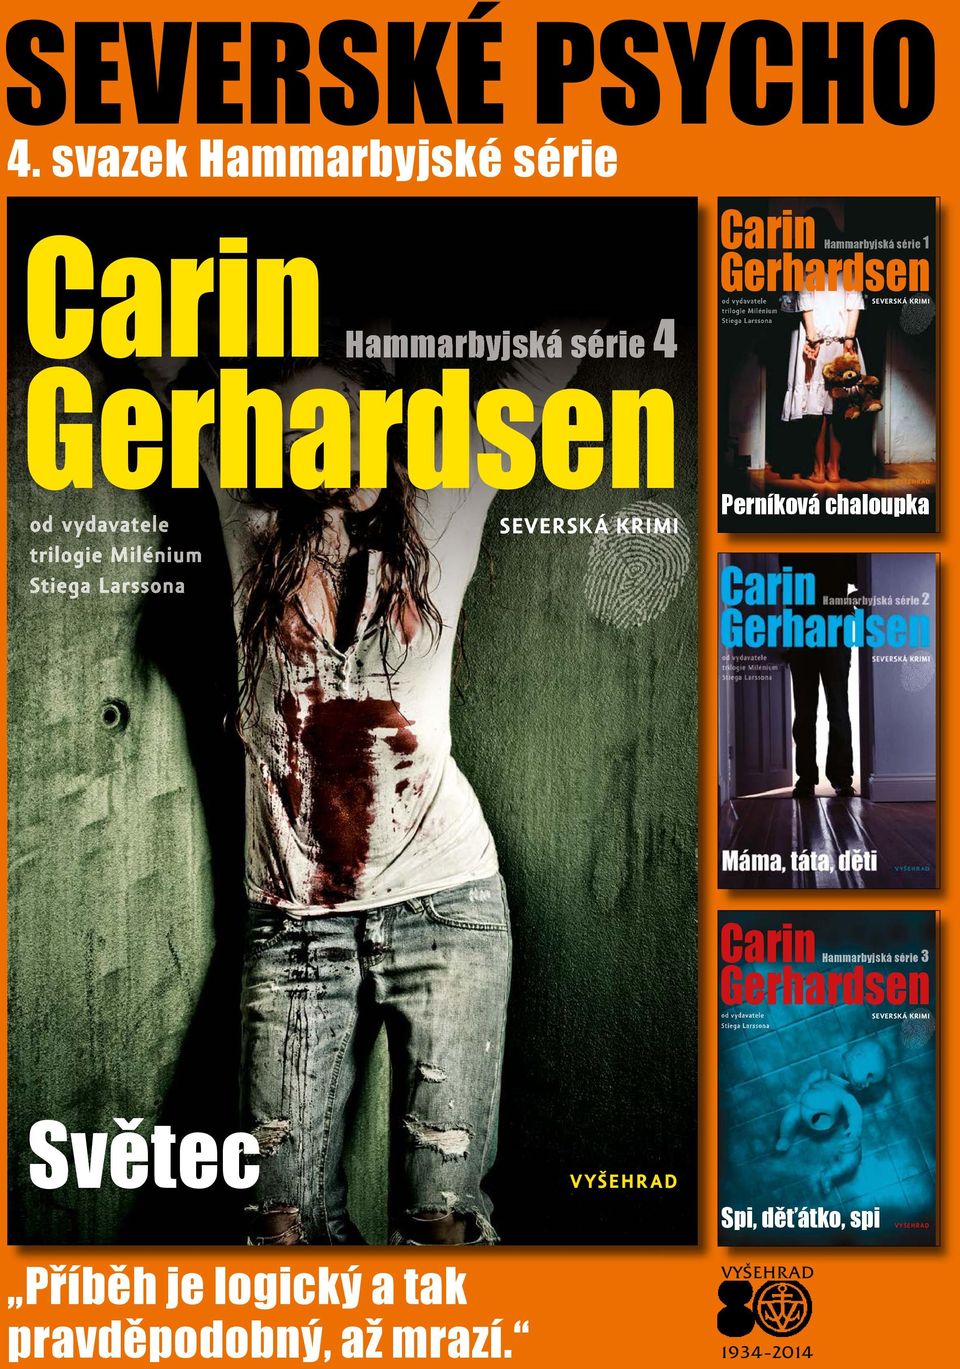 SEVERSKÁ KRIMI Carin Hammarbyjská série 1 Gerhardsen od vydavatele trilogie Milénium Stiega Larssona SEVERSKÁ KRIMI